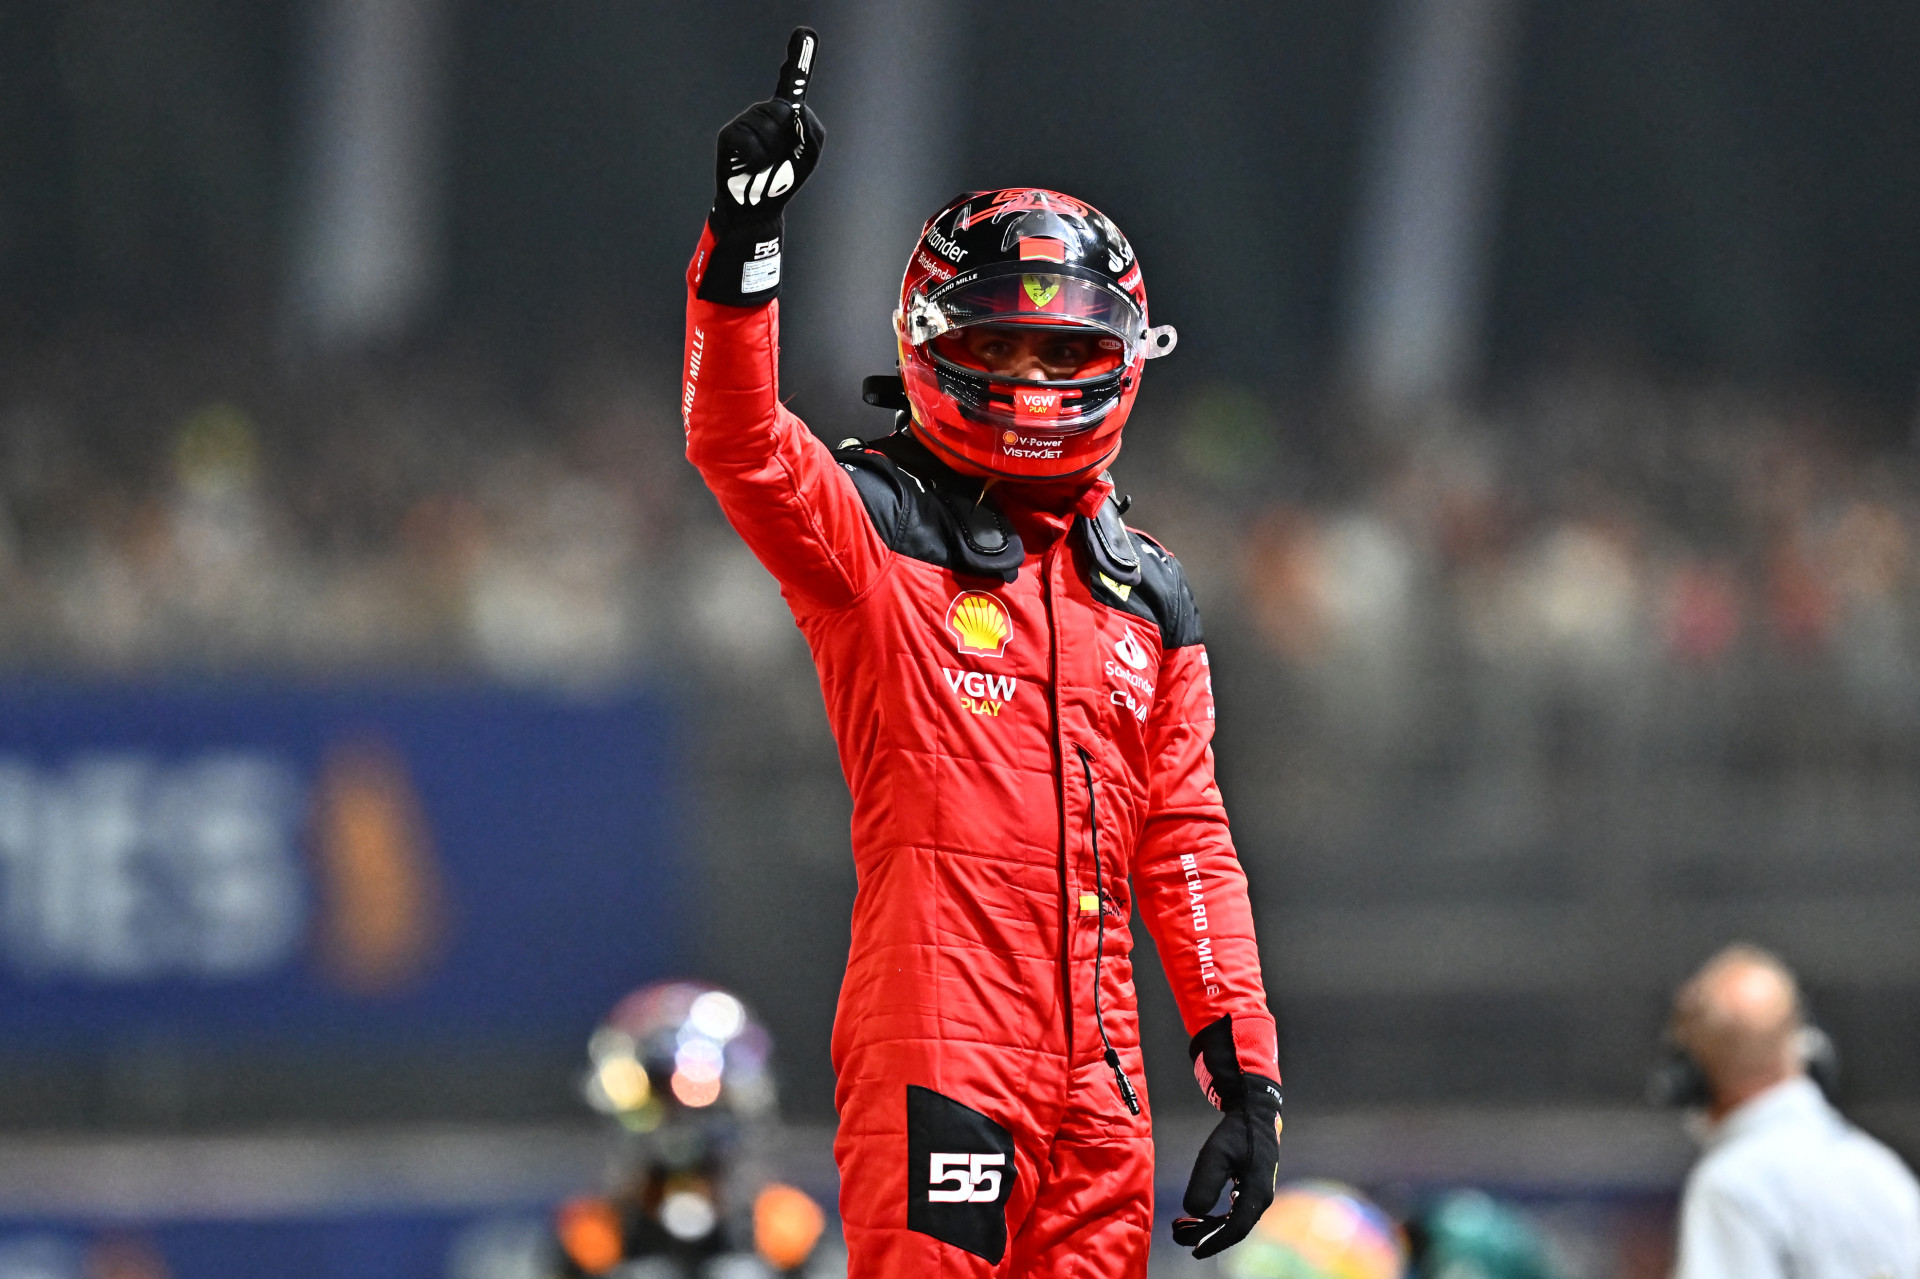 Sainz larga na pole do GP da Singapura e Verstappen fica fora do